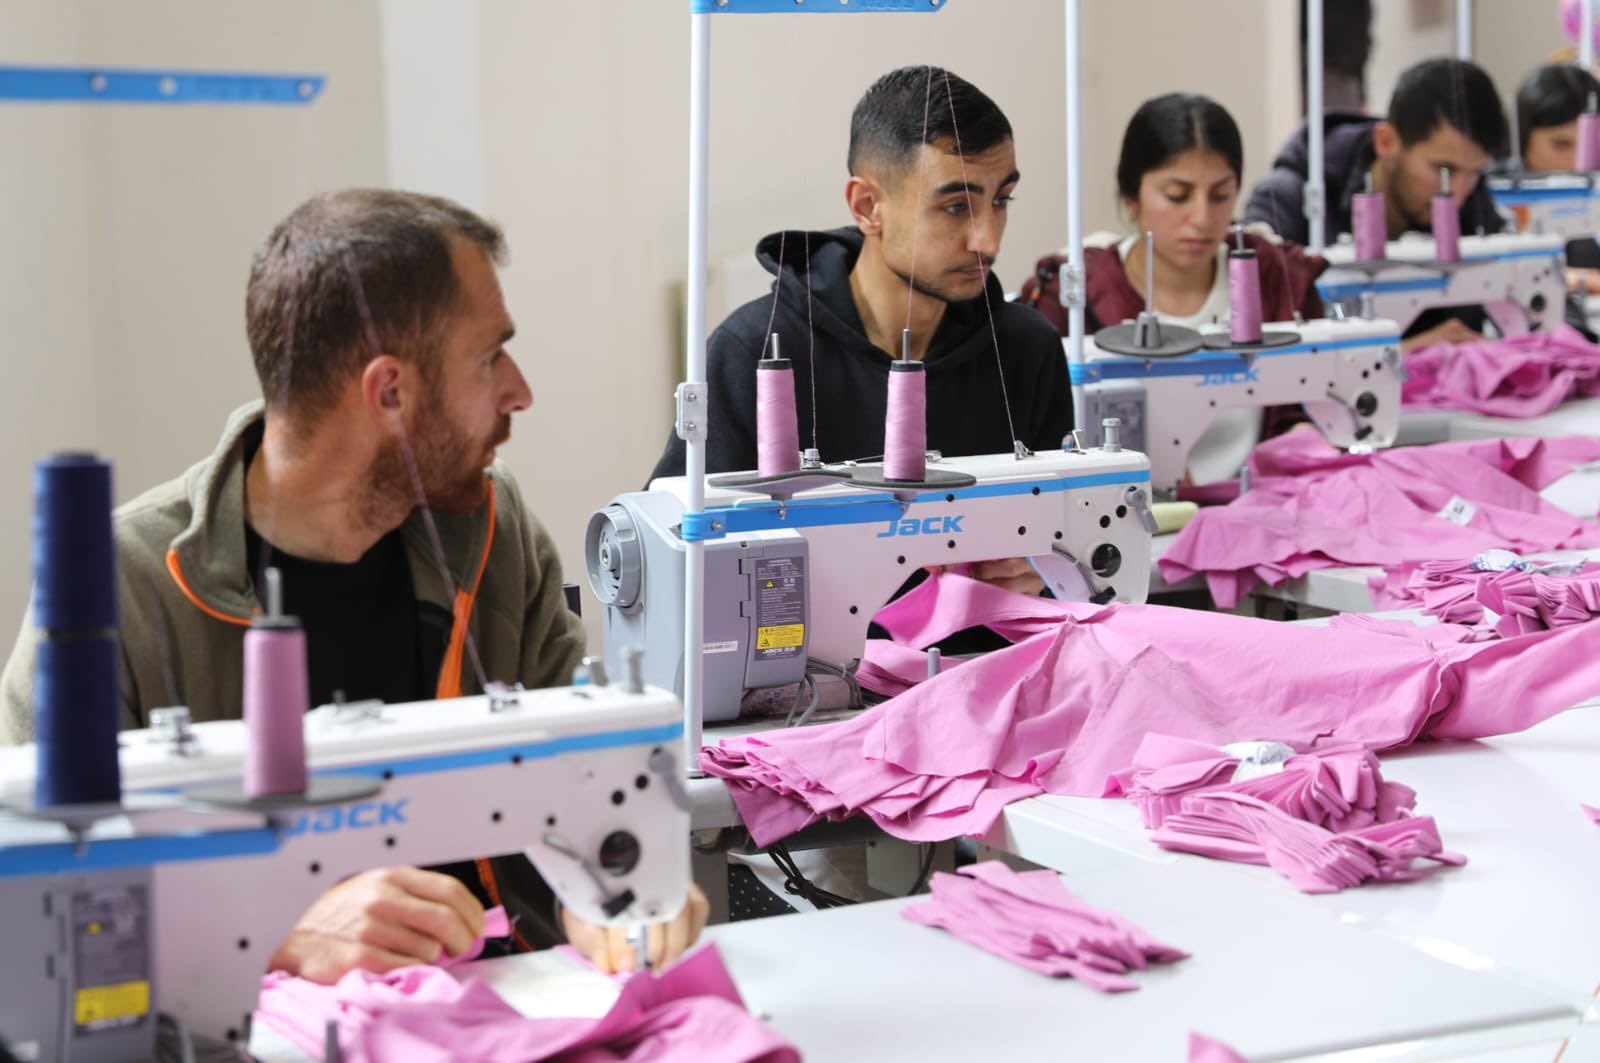 Sanayi ve Teknoloji Bakanlığı ile Gençlik ve Spor Bakanlığı iş birliğiyle gençlerin istihdamına yönelik etkin politikalar geliştirilmesi ve uygulanması amacıyla Mardin Büyükşehir Belediyesinin desteğiyle yürütülen proje çerçevesinde Mardin’de kurulumu süren 11 tekstil fabrikasının ilki Derik ilçesinde tamamlanarak üretime başladı.